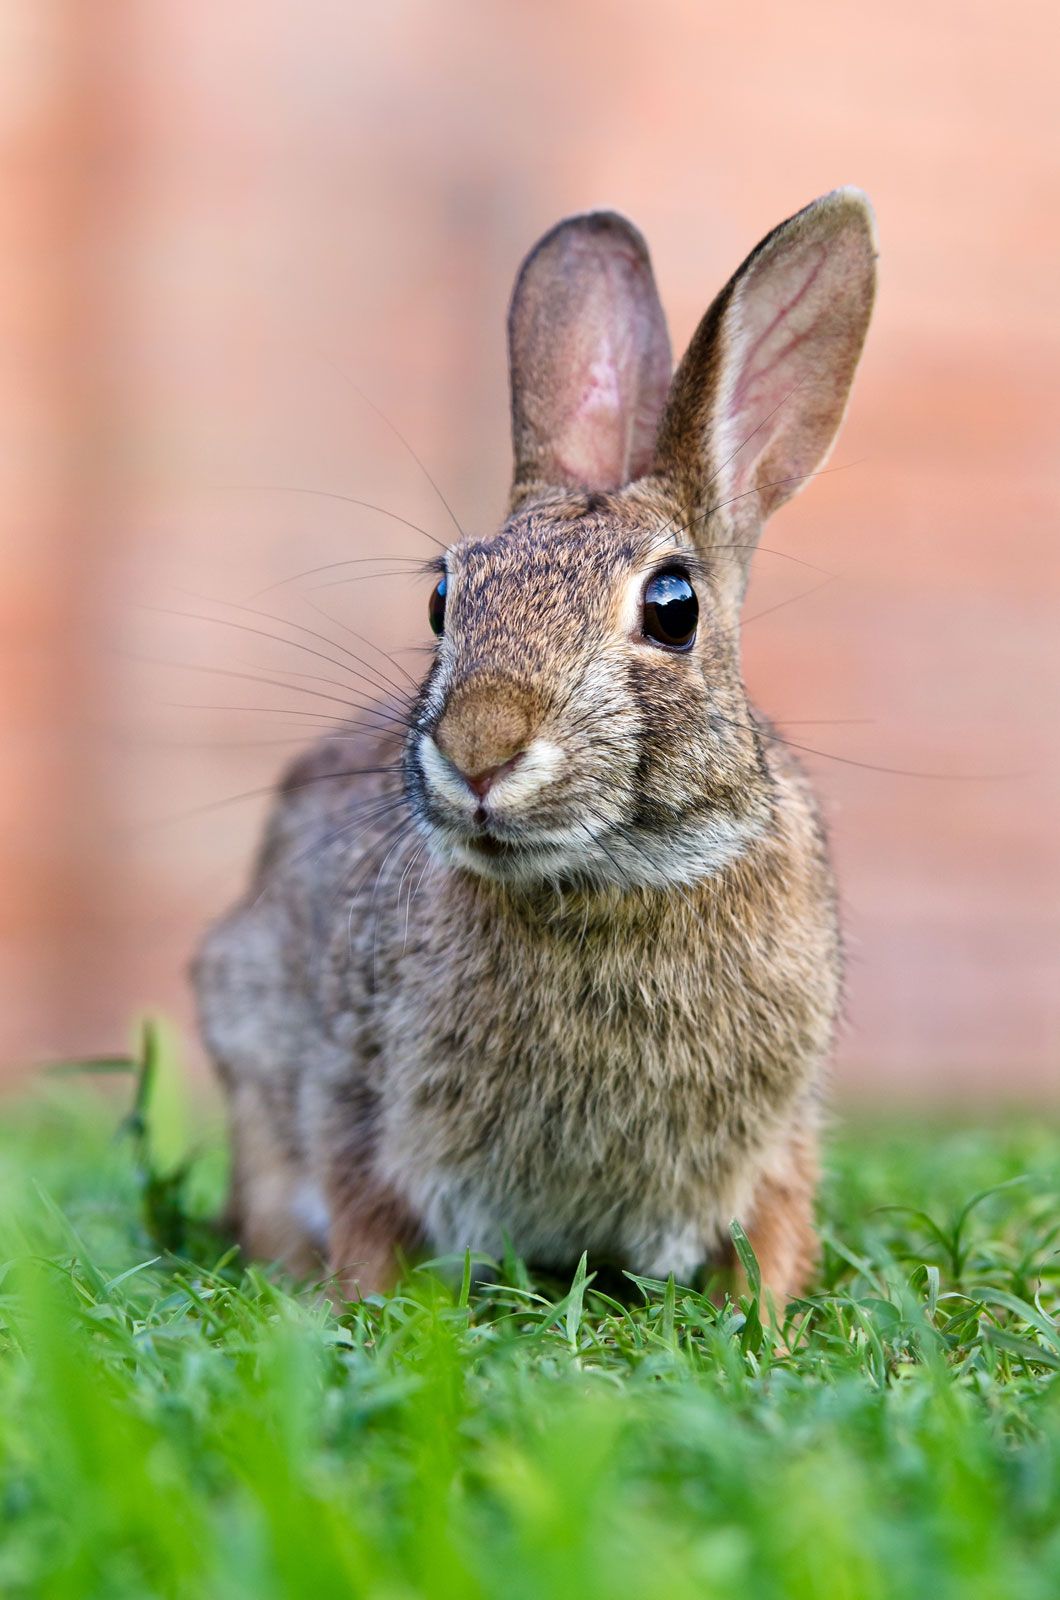 New-World-Sylvilagus-cottontail-rabbits.jpg